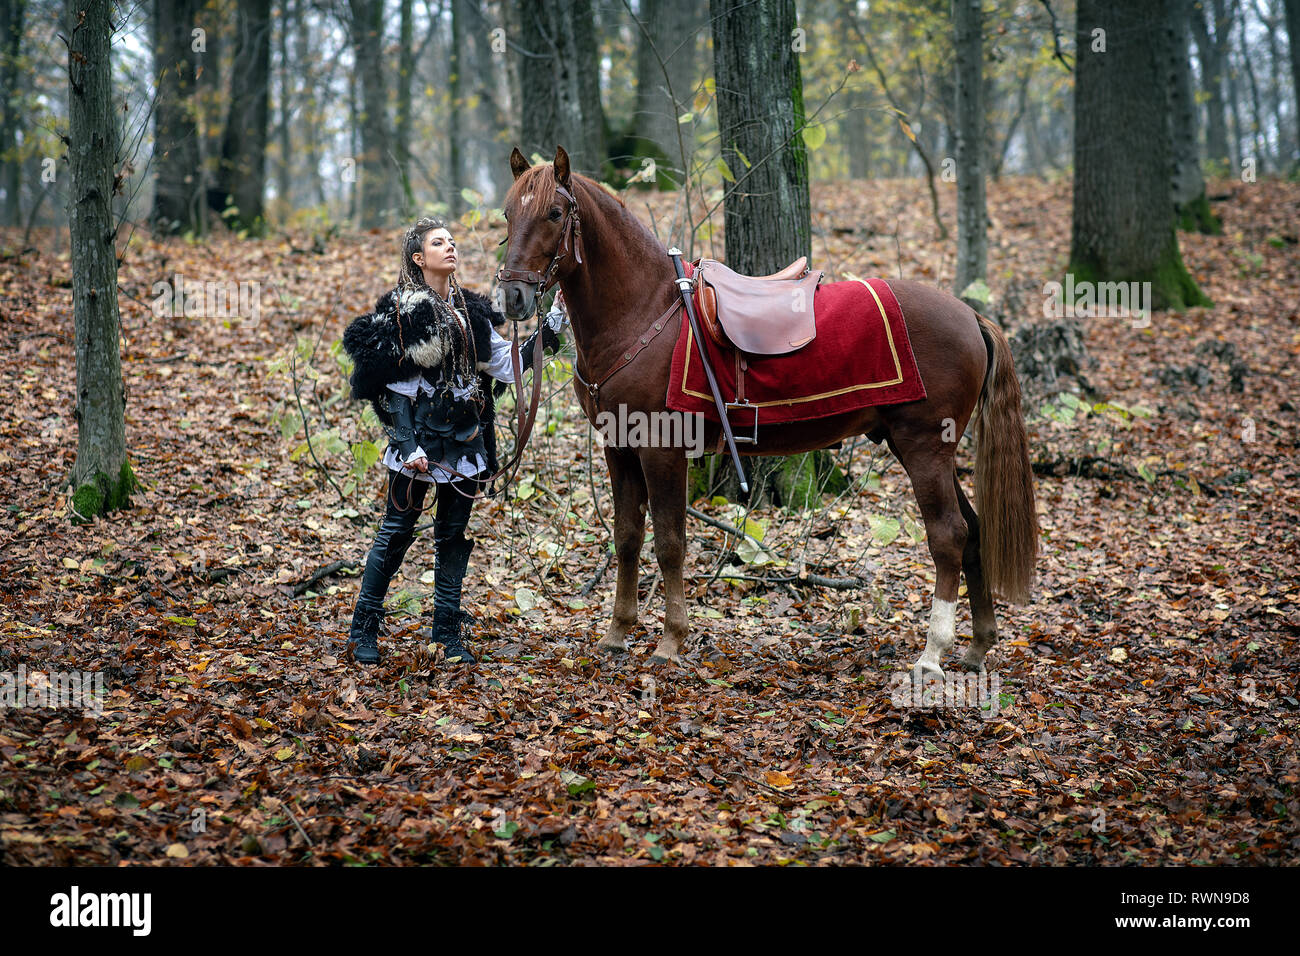 Krieger Schönheit mit ihrem Pferd in den Wald. Viking Frau. Rekonstruktion eines mittelalterlichen Krieg Szene im Wald, im Herbst. Stockfoto